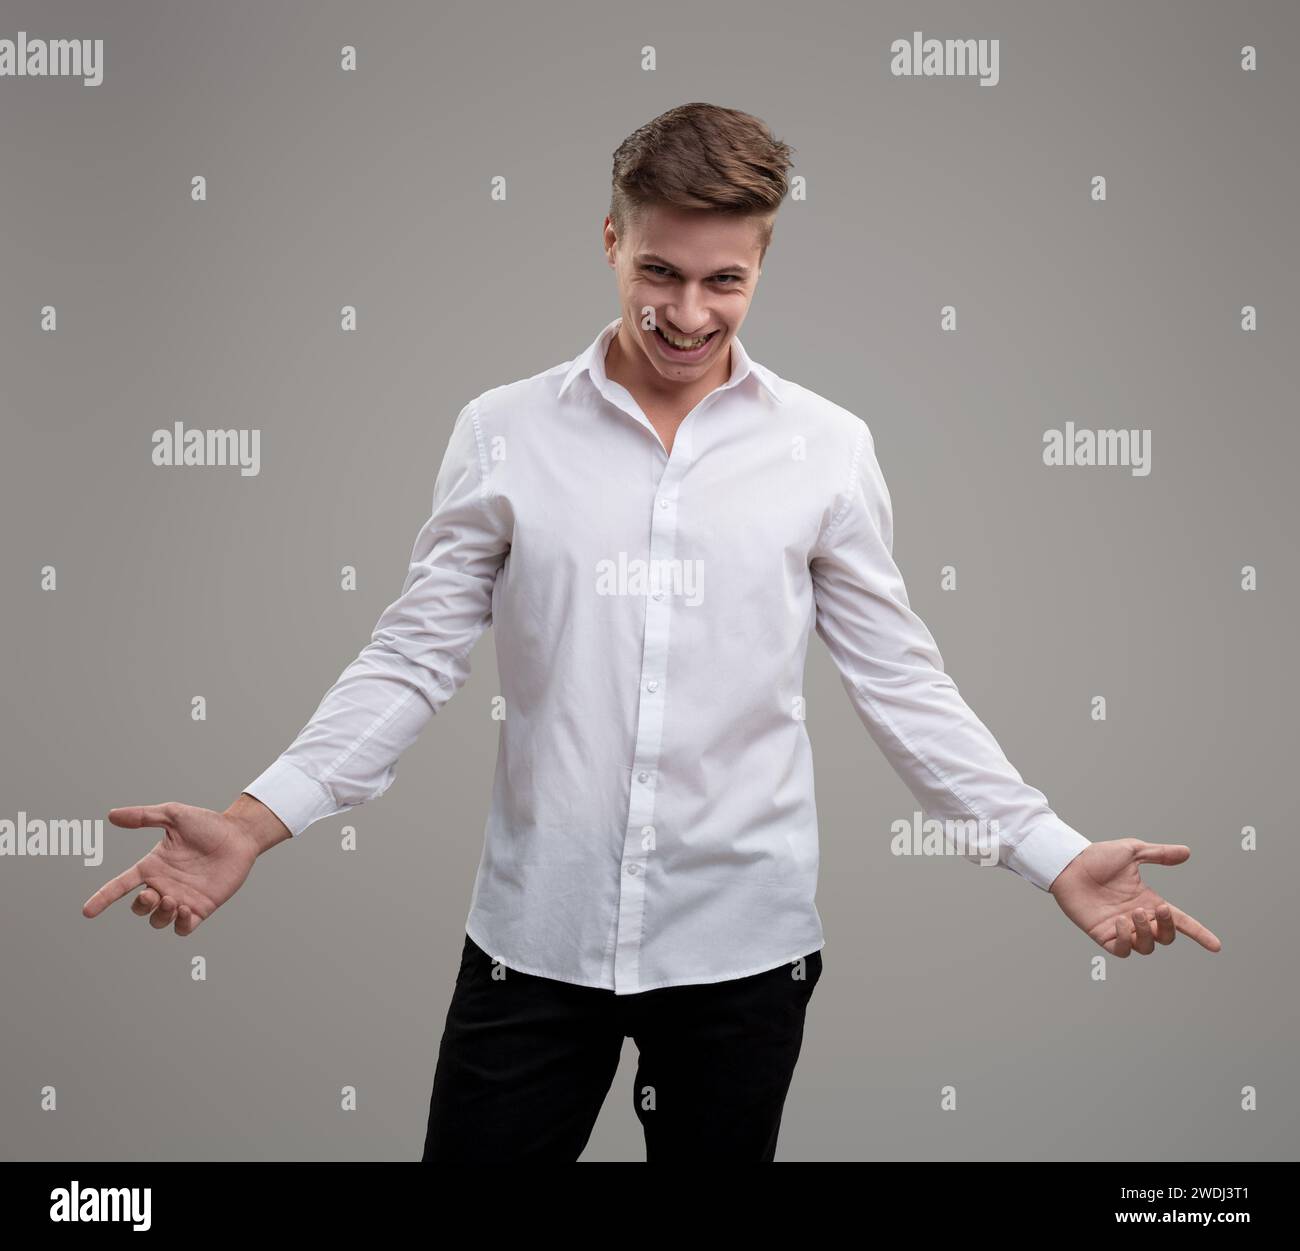 Le geste du jeune homme en chemise blanche symbolise l'ouverture à de nouvelles expériences et la connexion sociale Banque D'Images